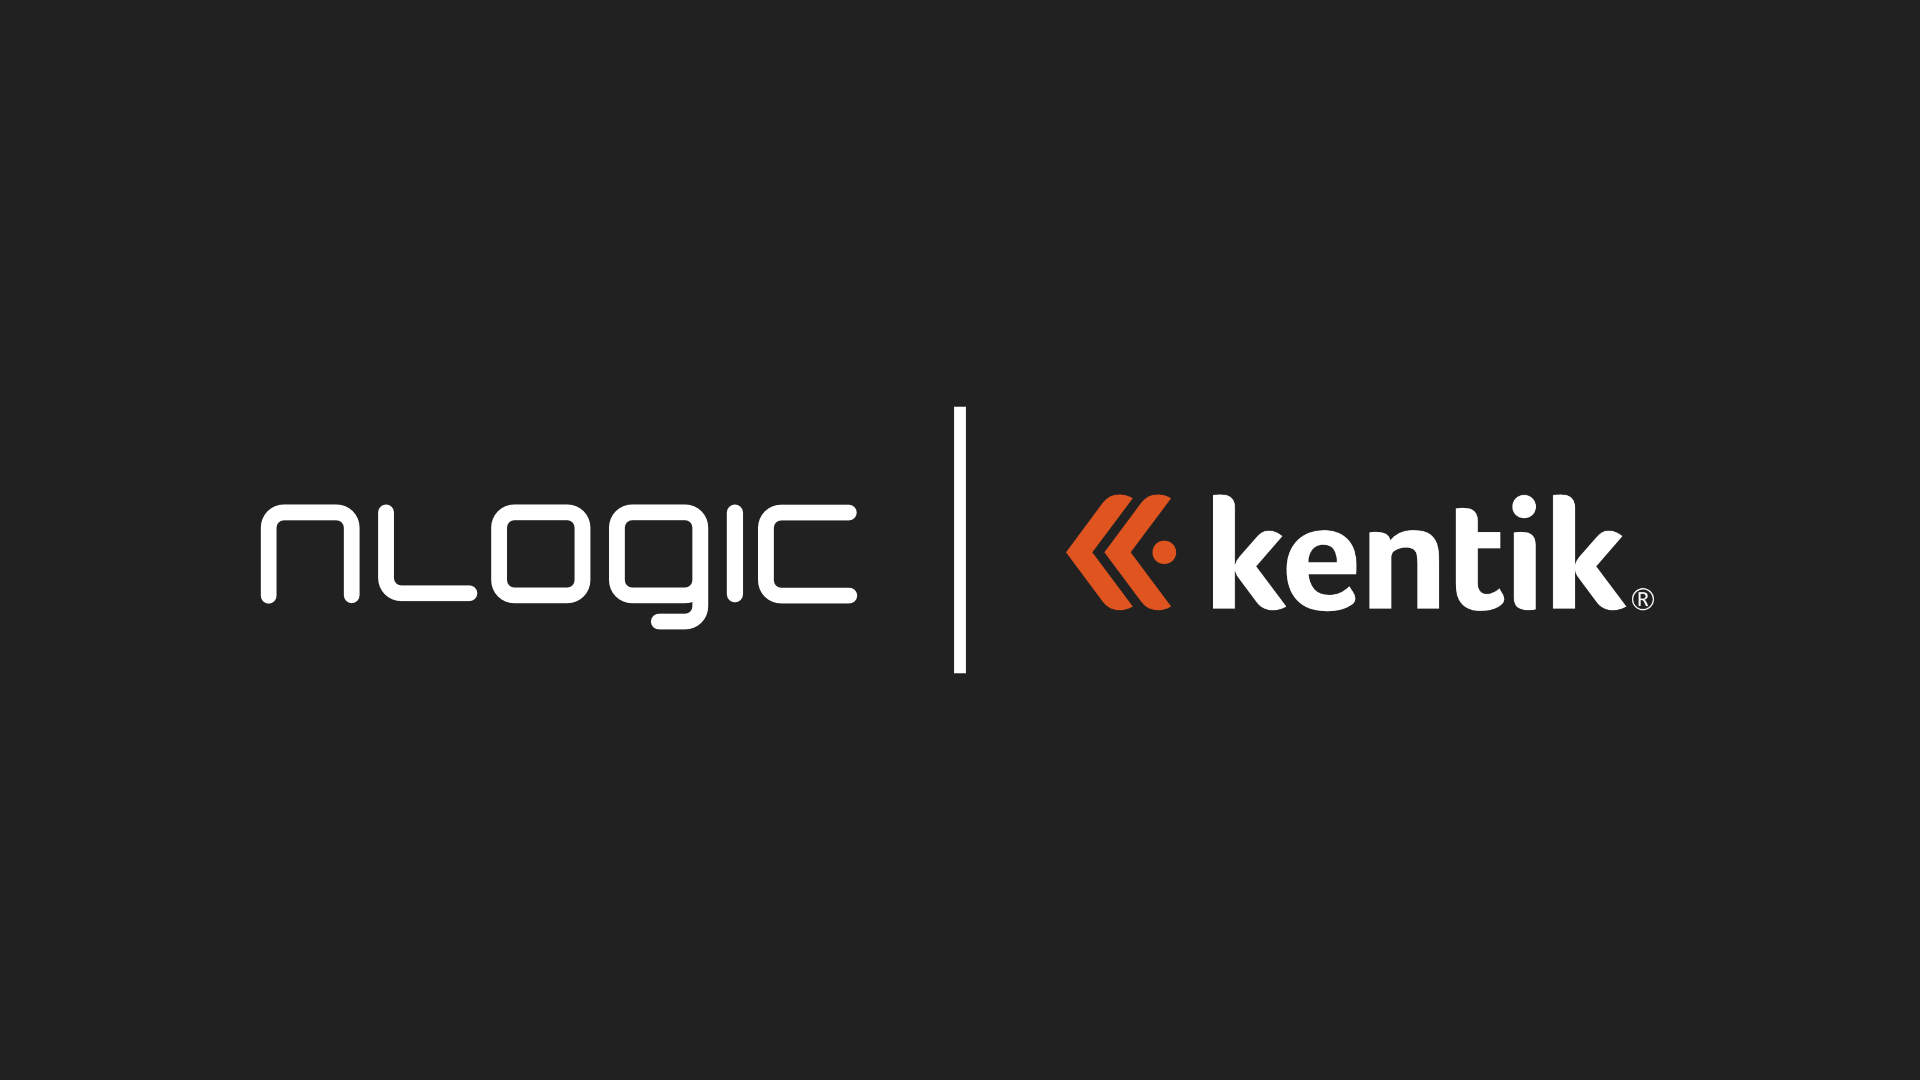 nLogic & kentik logo.